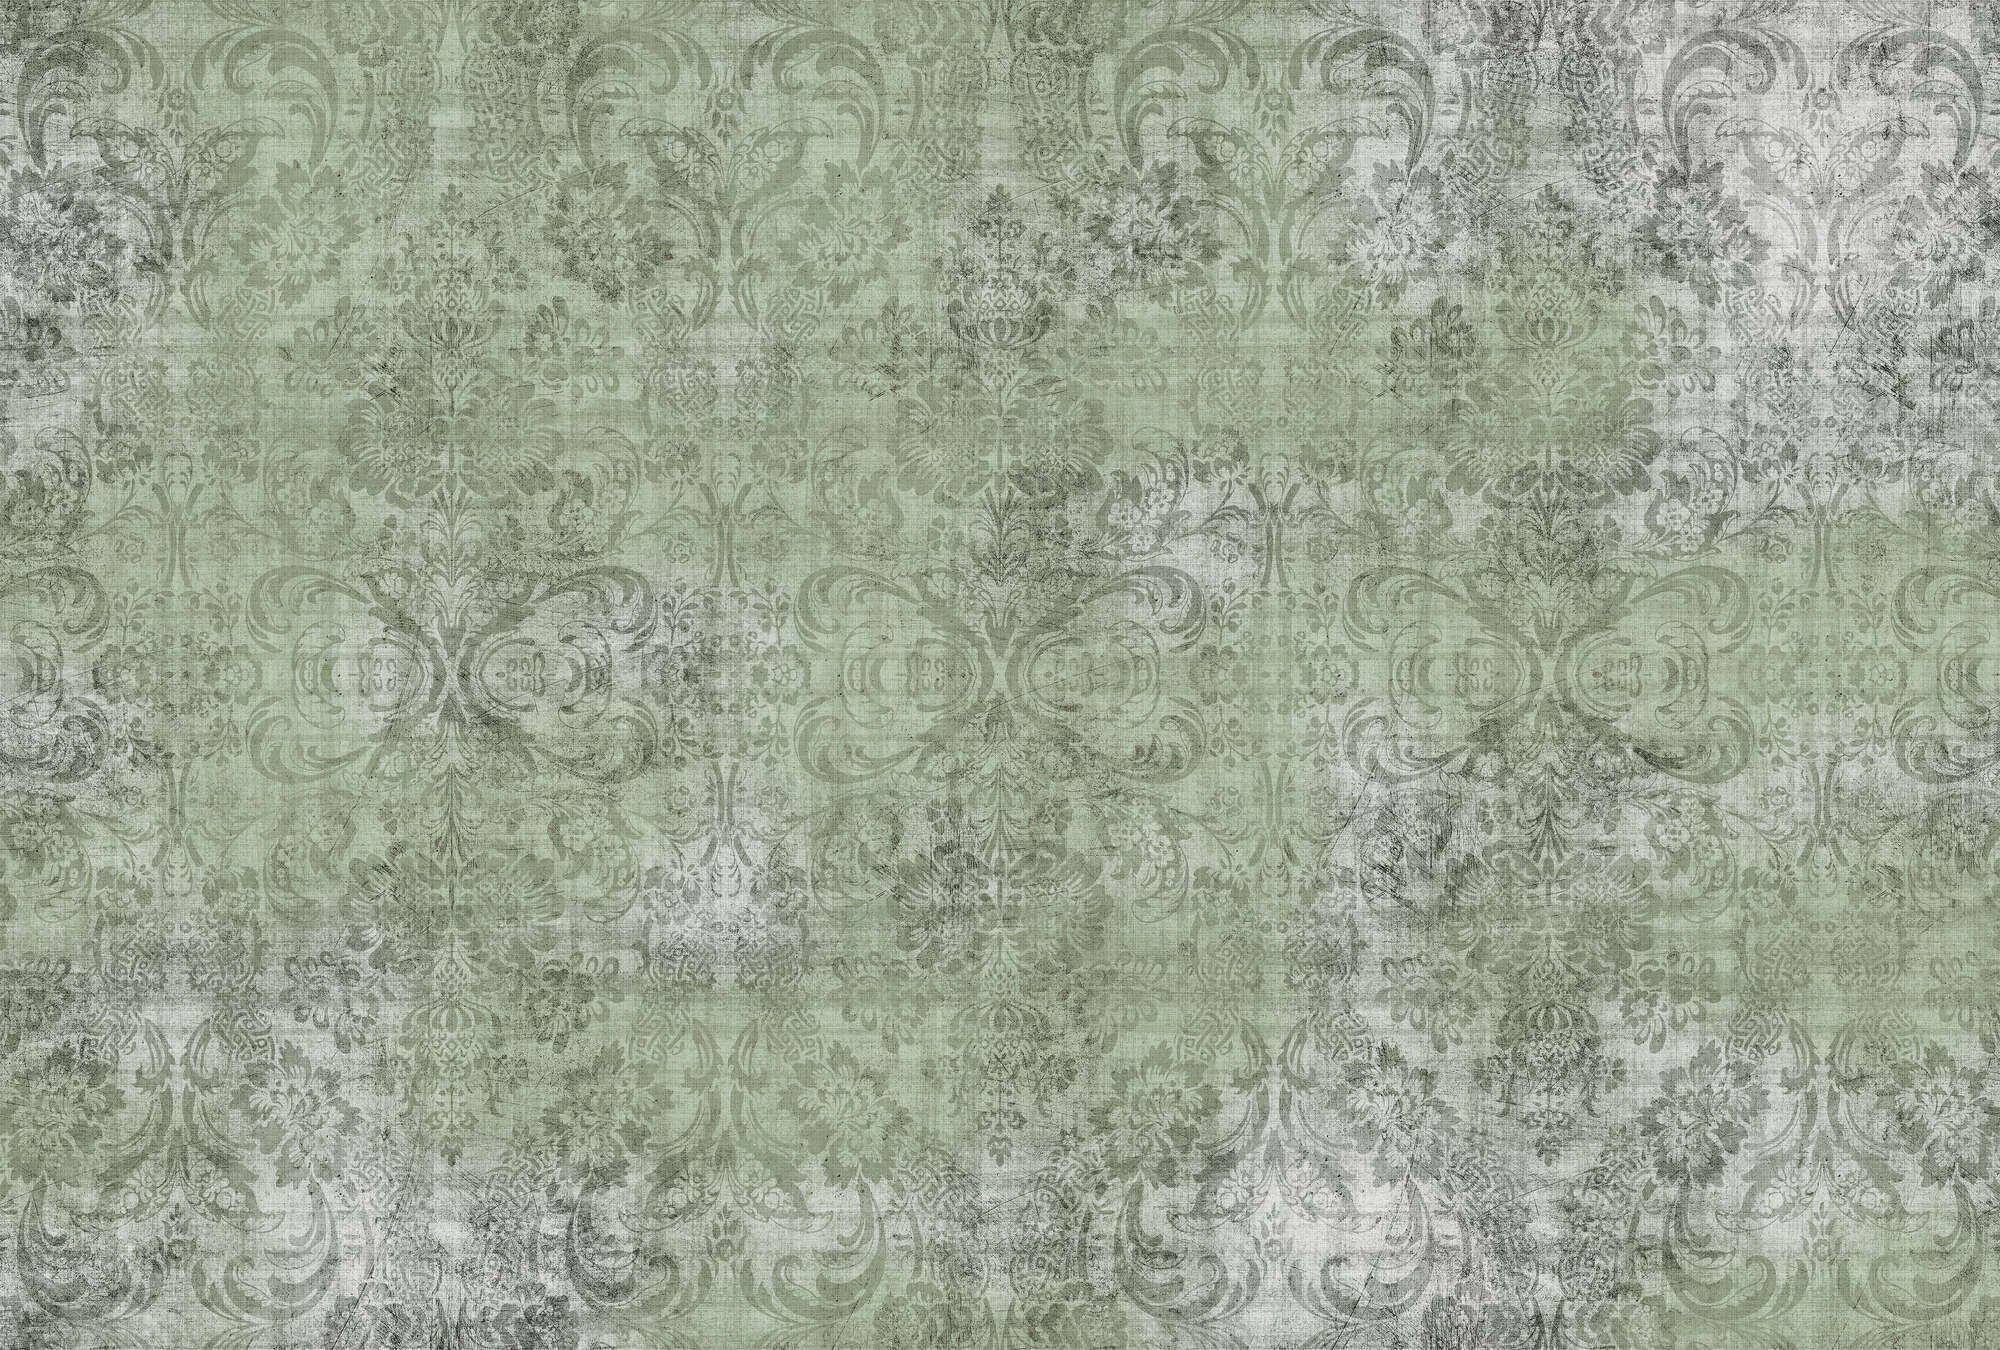             Old damask 2 - Ornements sur papier peint vert chiné - À structure lin naturel - Vert | Intissé lisse mat
        